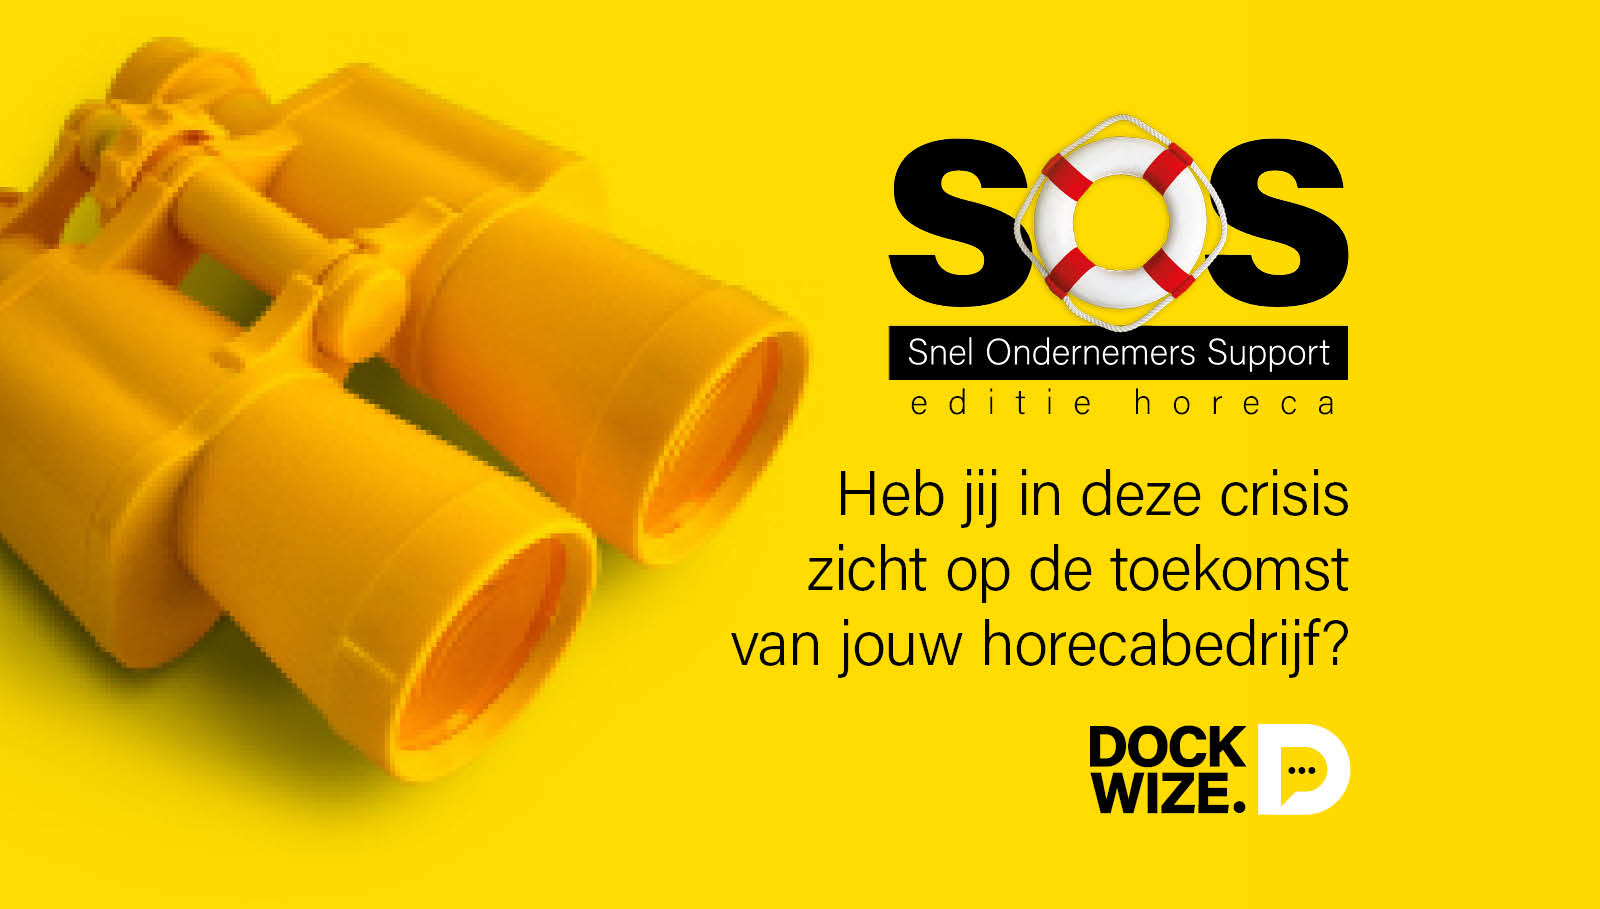 SOS Dockwize editie horeca post